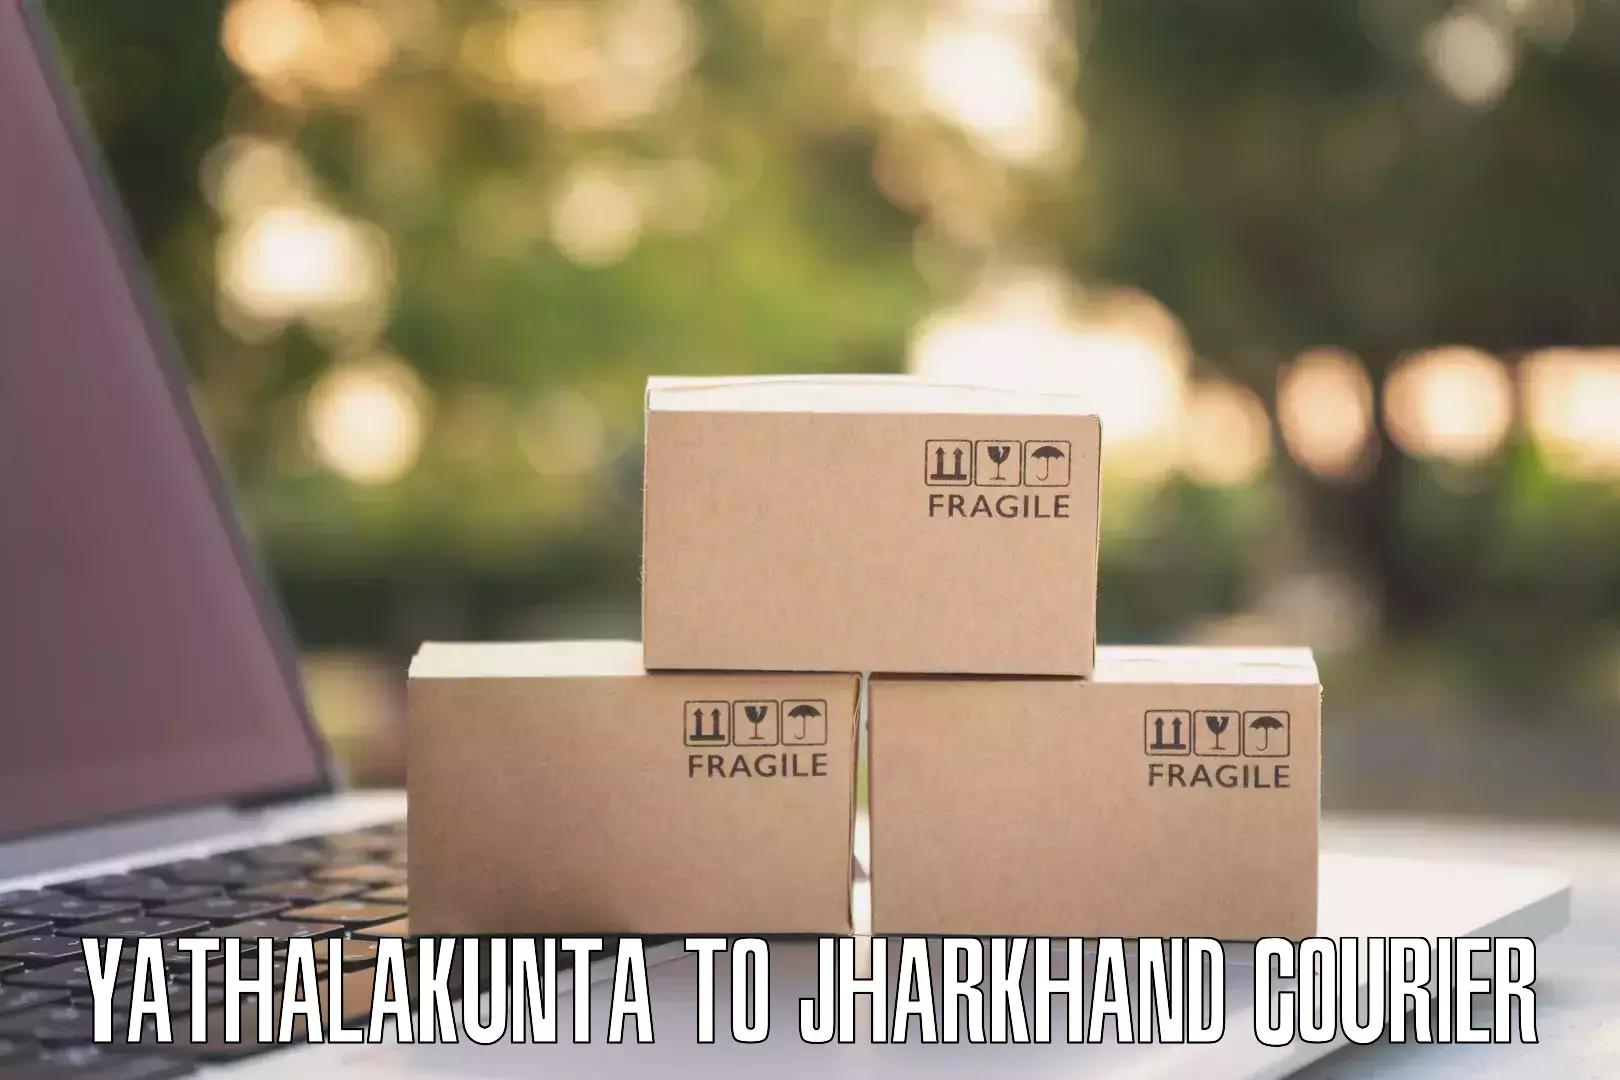 Efficient logistics management Yathalakunta to Kedla